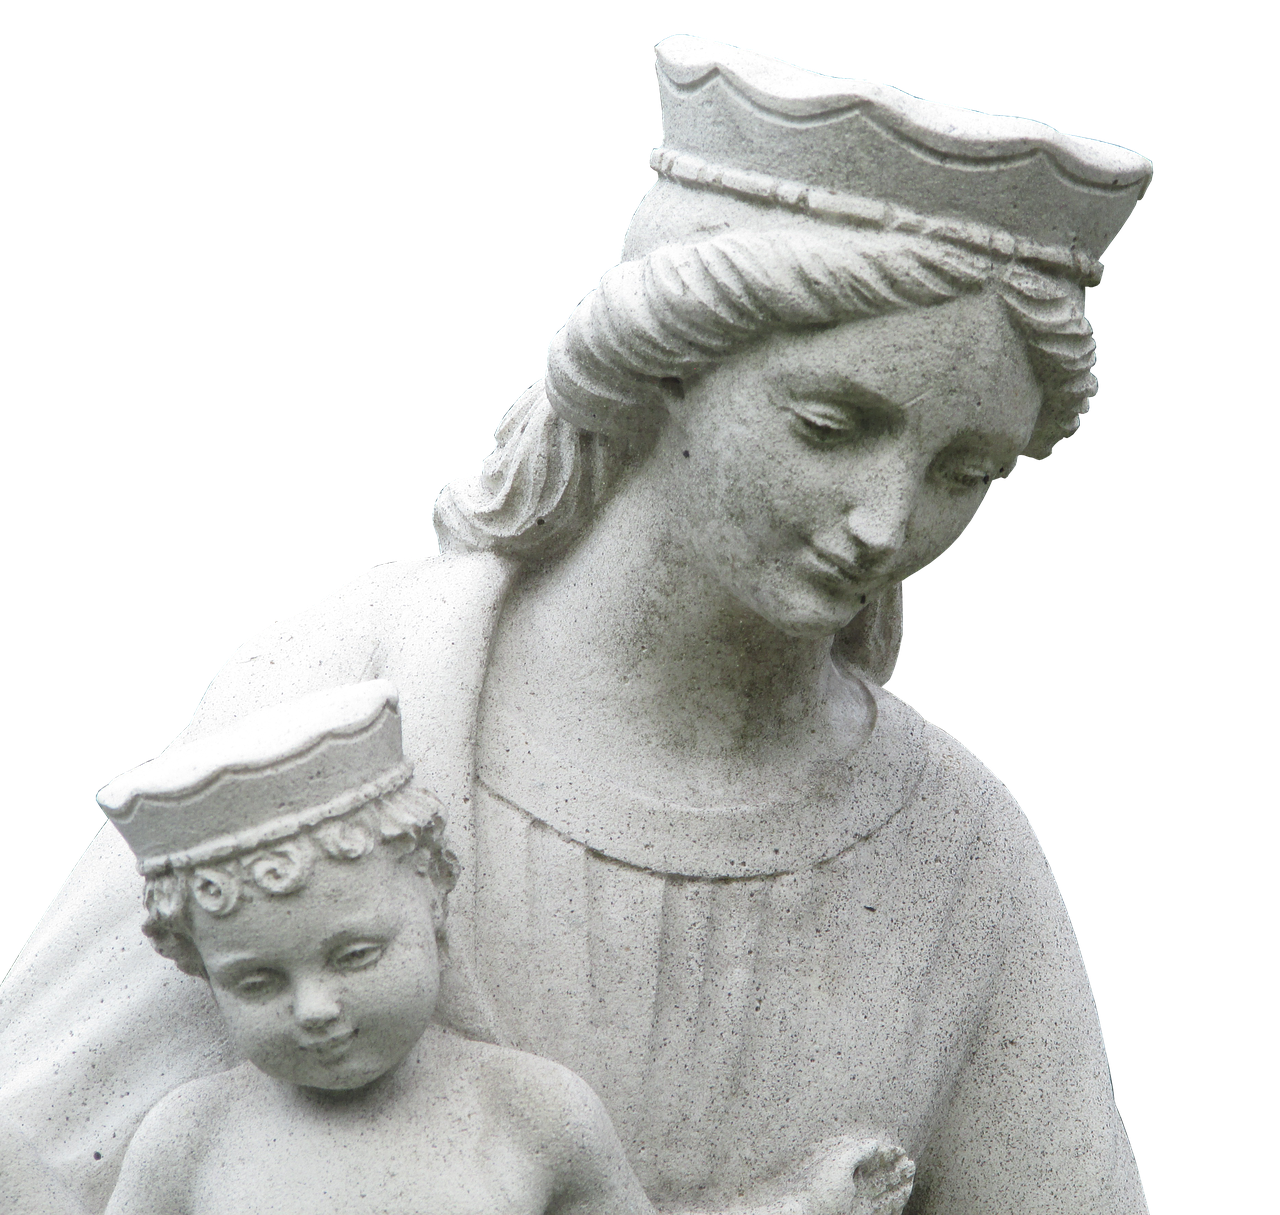 Statula, Mergelė Marija, Šventas, Skulptūra, Marija, Dievo Motina, Krikščionybė, Religija, Krikščionis, Pirmoji